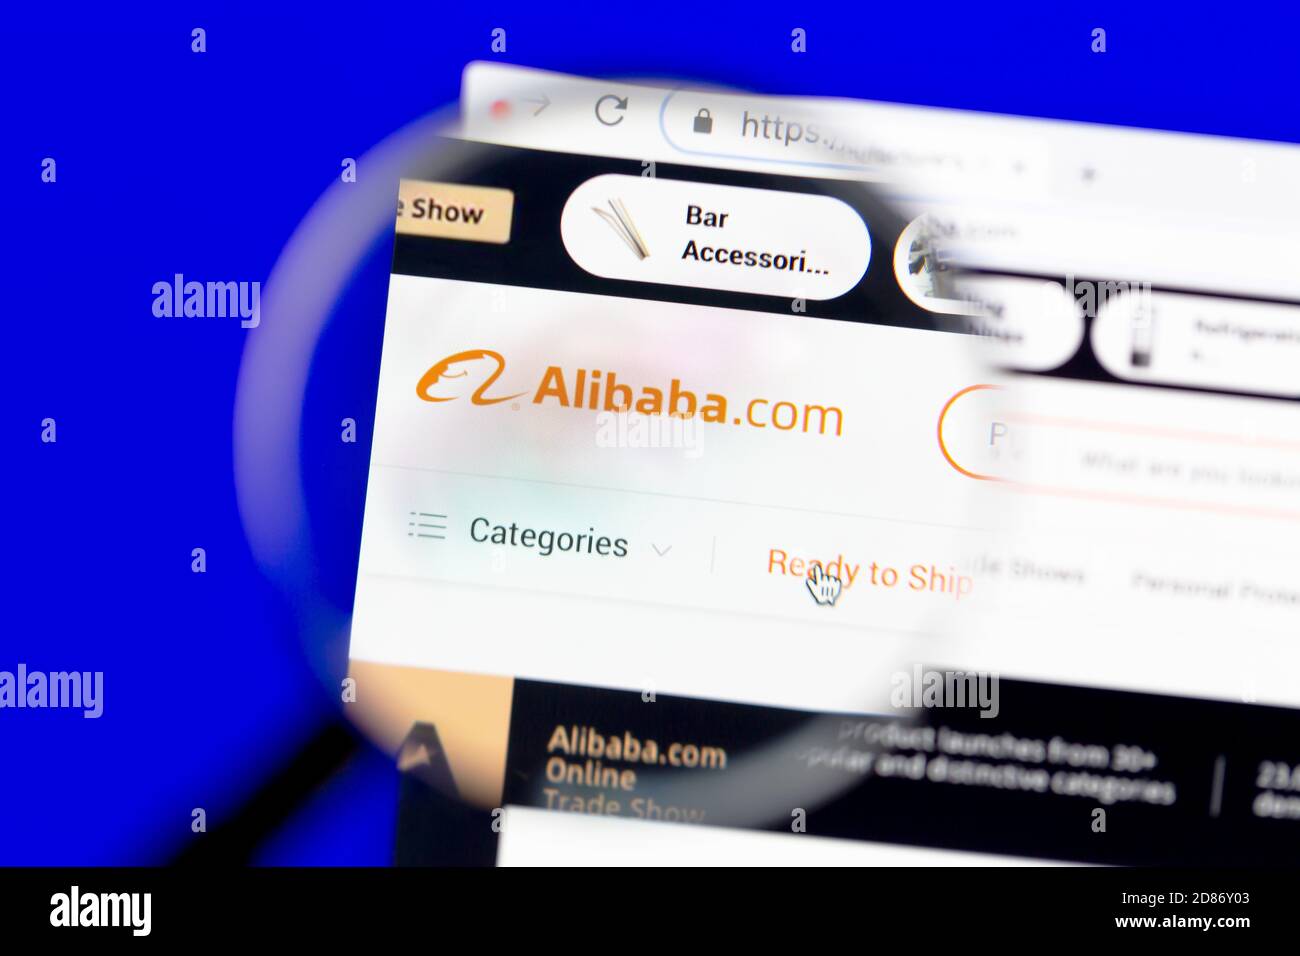 Ostersund, Suède - page d'accueil du 27 octobre 2020 Alibaba.com. Alibaba.com est une multinationale chinoise spécialisée dans le commerce électronique, reta Banque D'Images